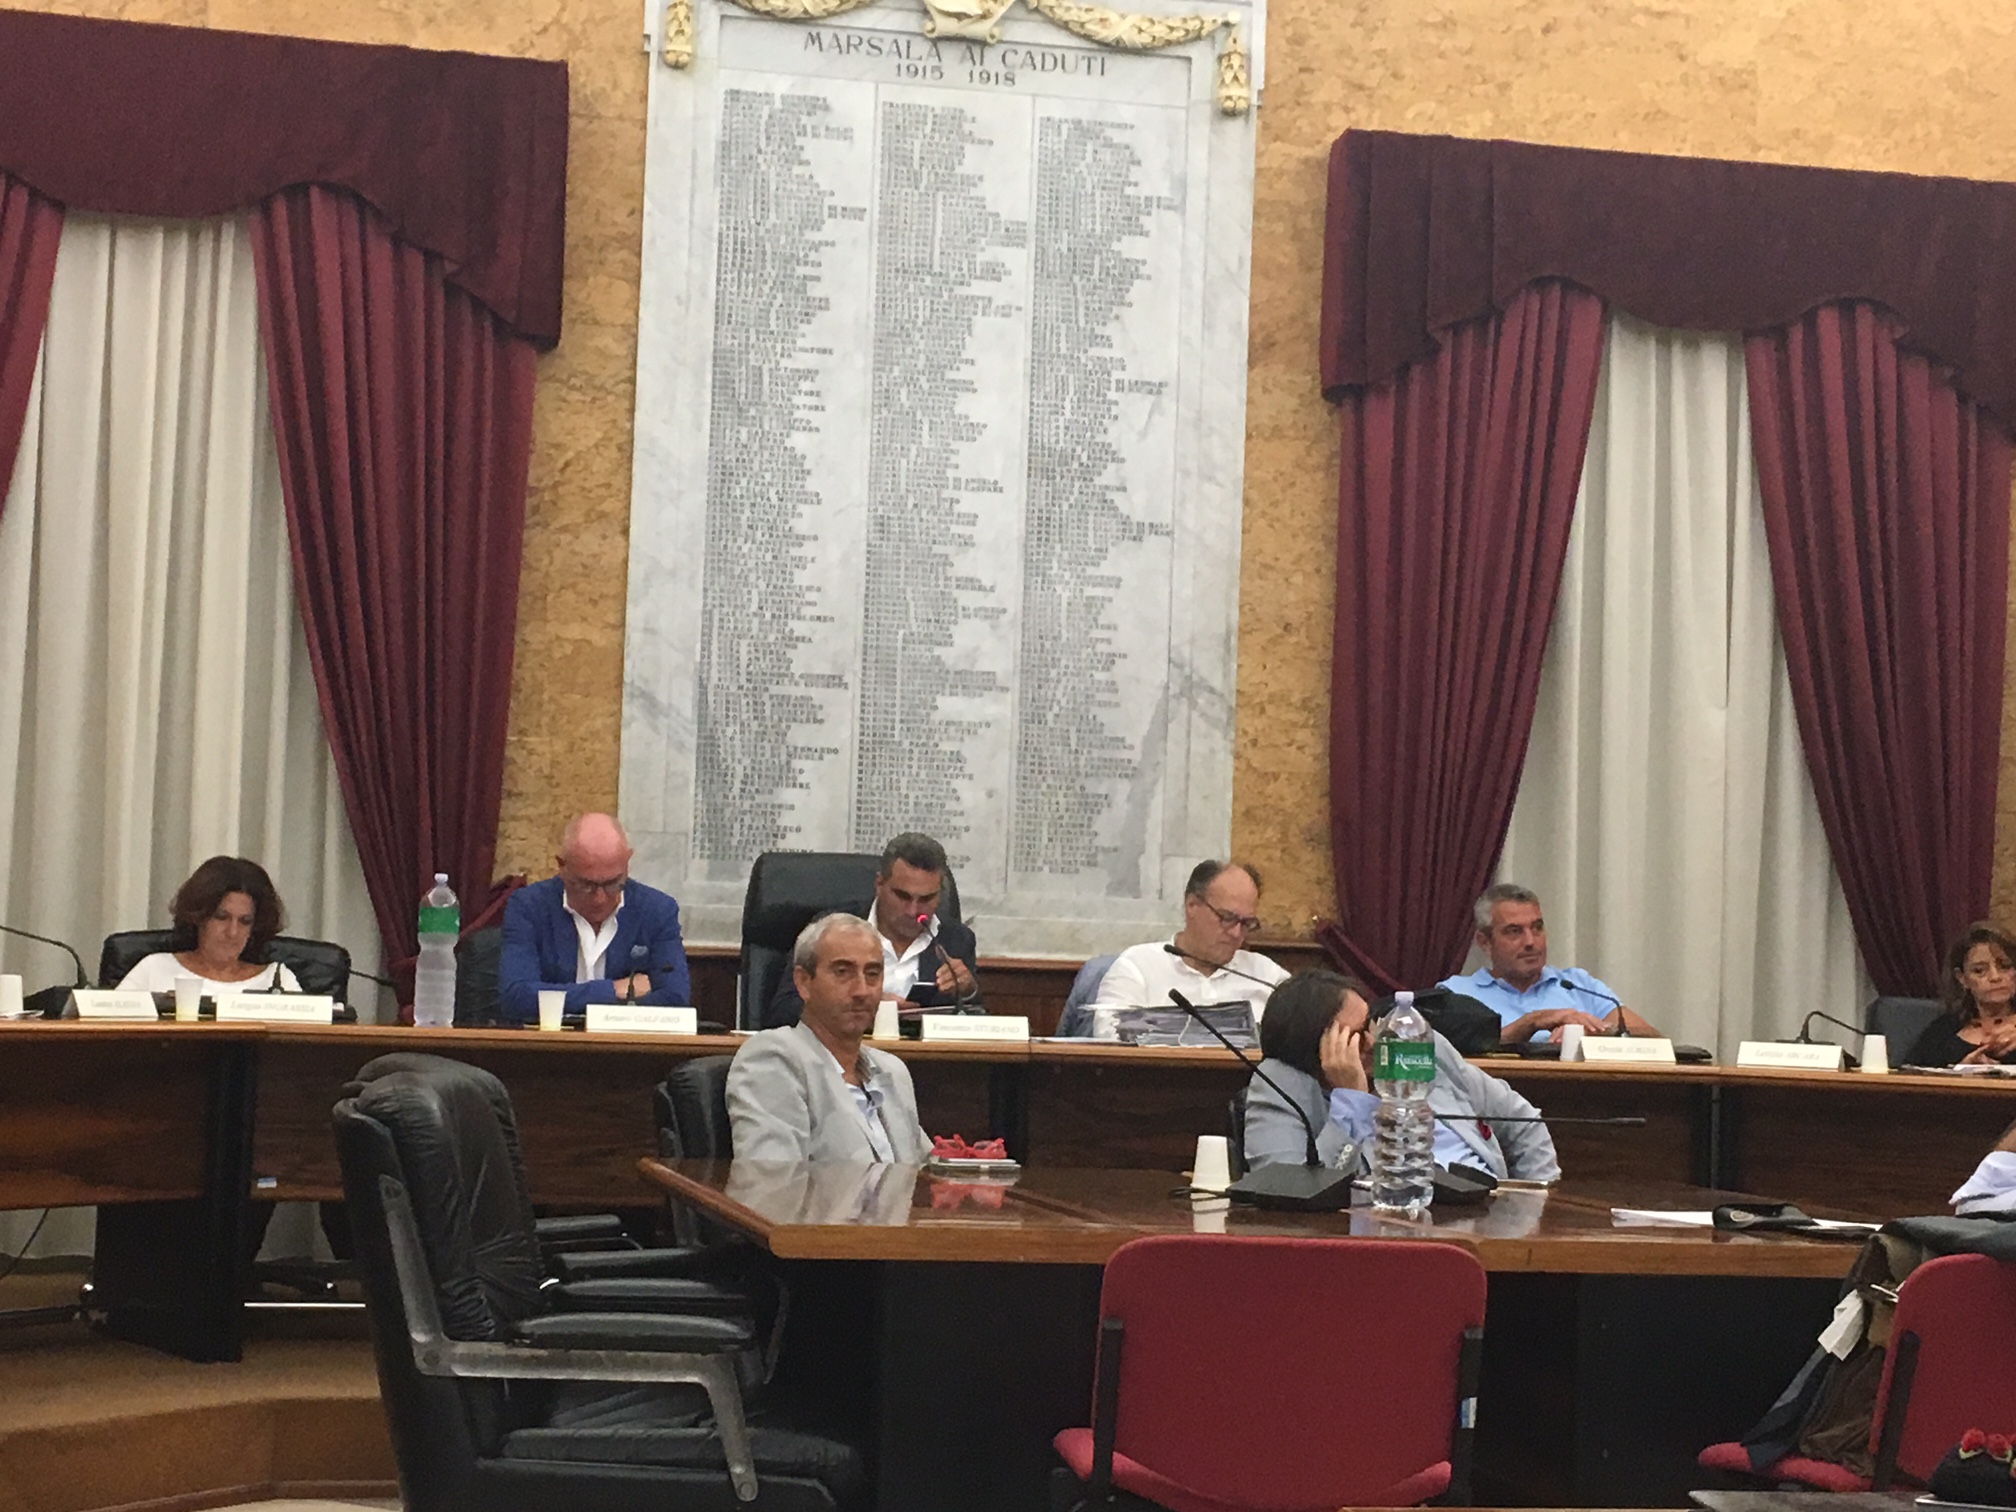 Consiglio comunale di Marsala: tutti interrogano il sindaco su tutto